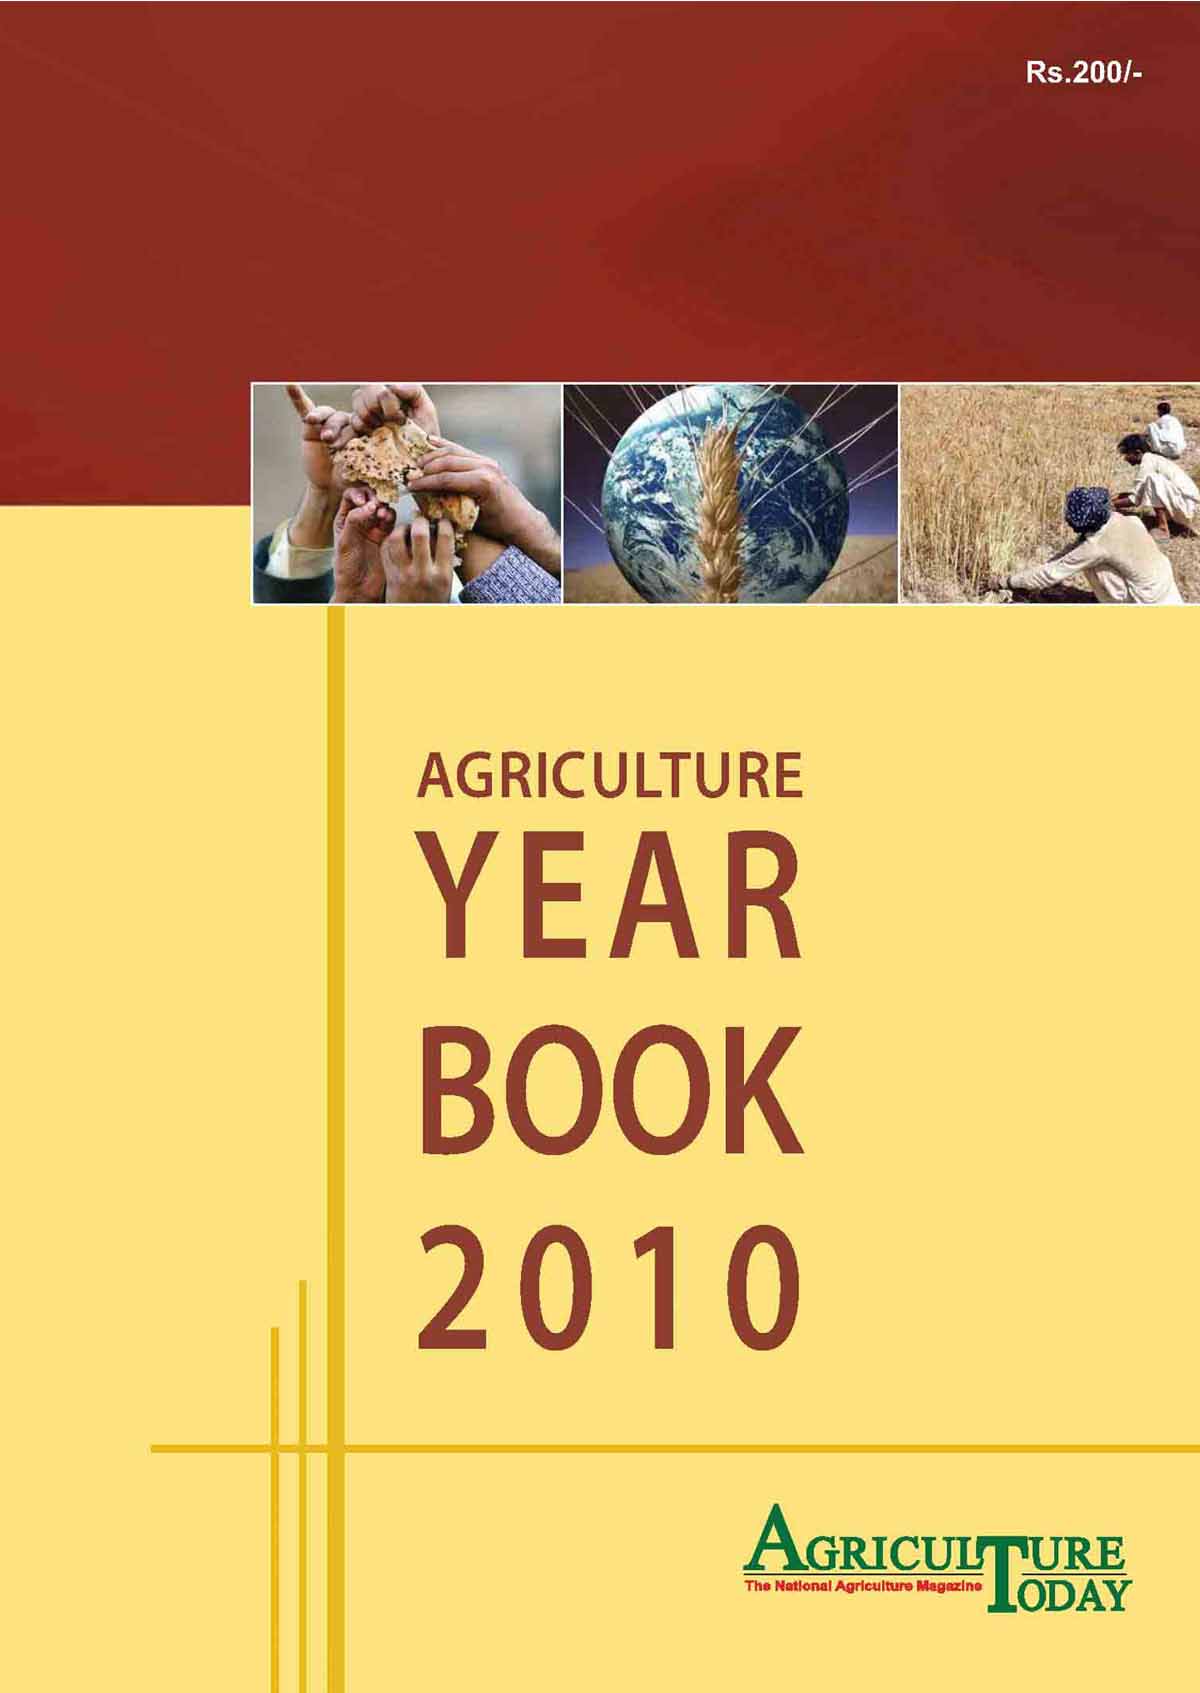 Year Book 2010